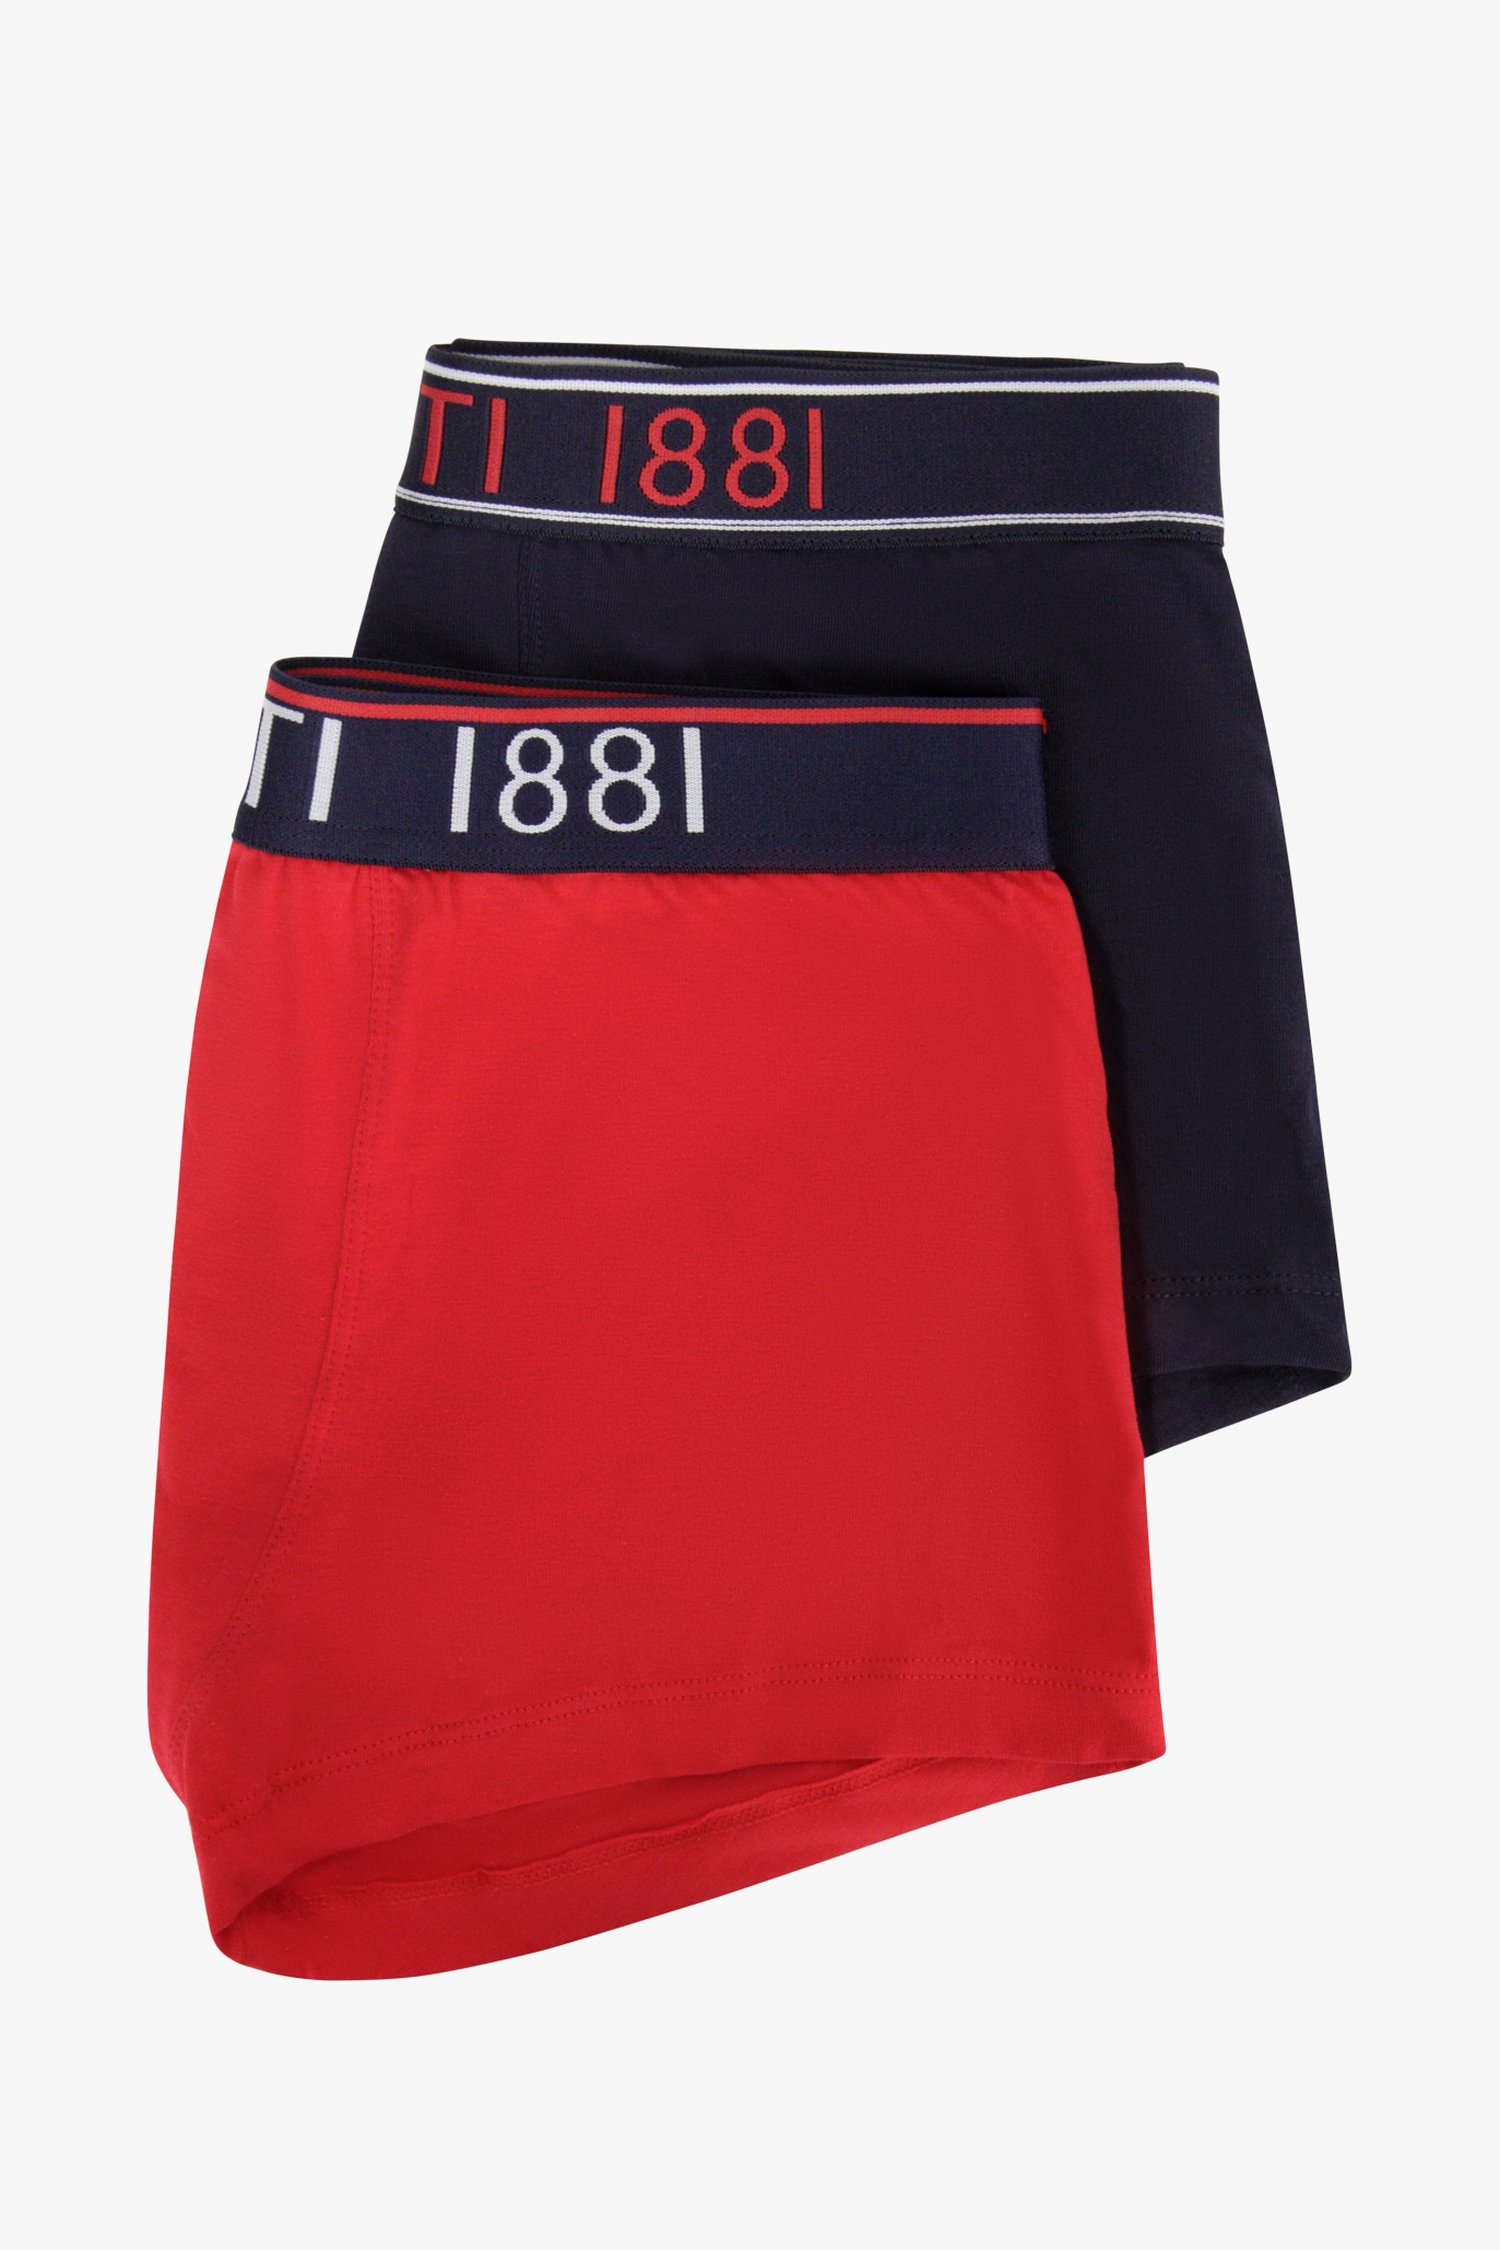 Boxers - rouge et bleu - 2 pack de Cerruti 1881 pour Hommes